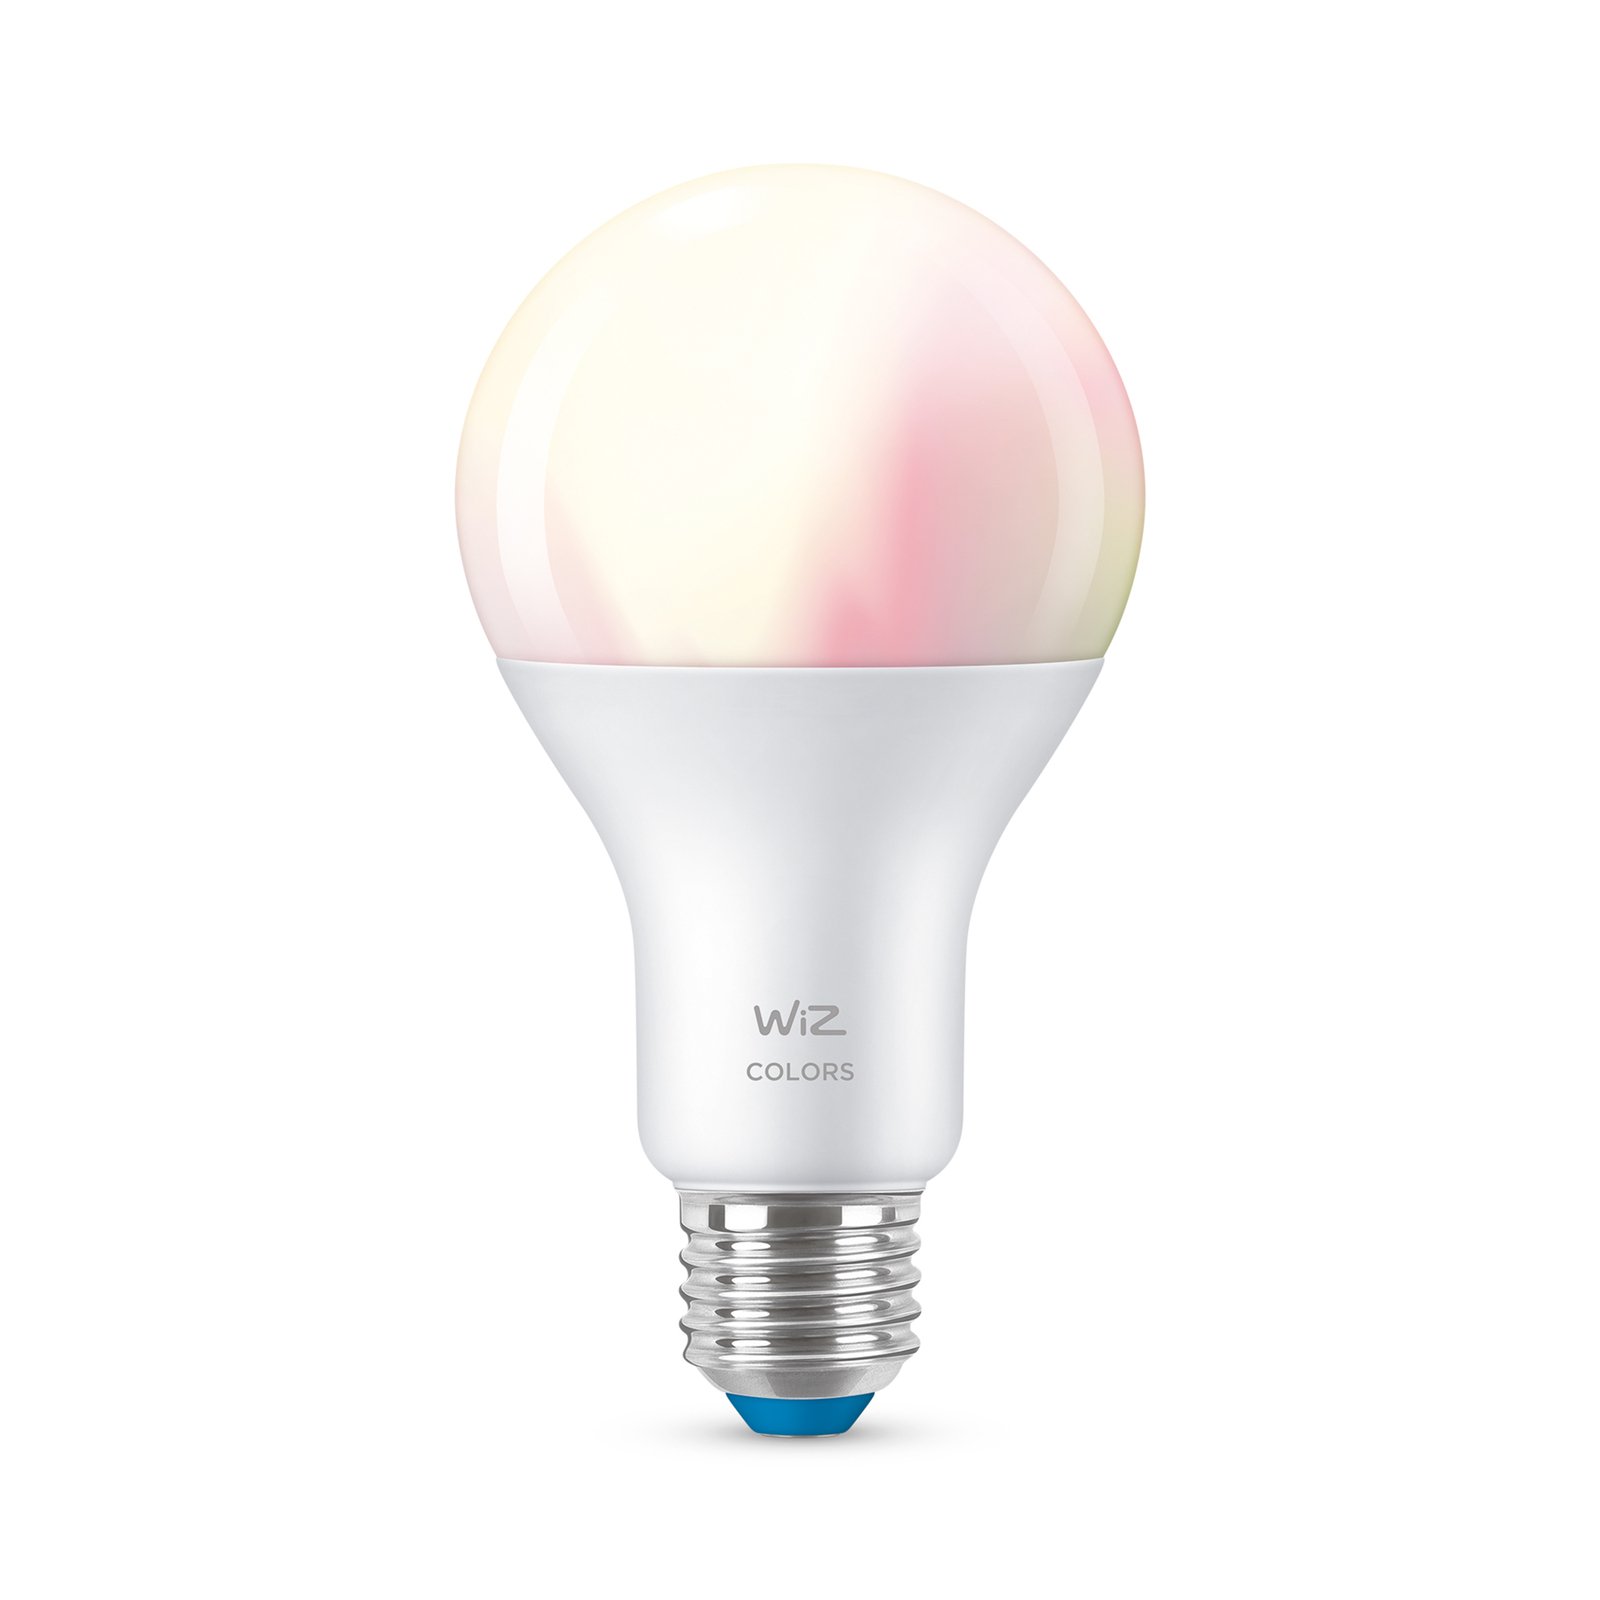 WiZ A67 ampoule LED Wi-Fi E27 13W mate RGB